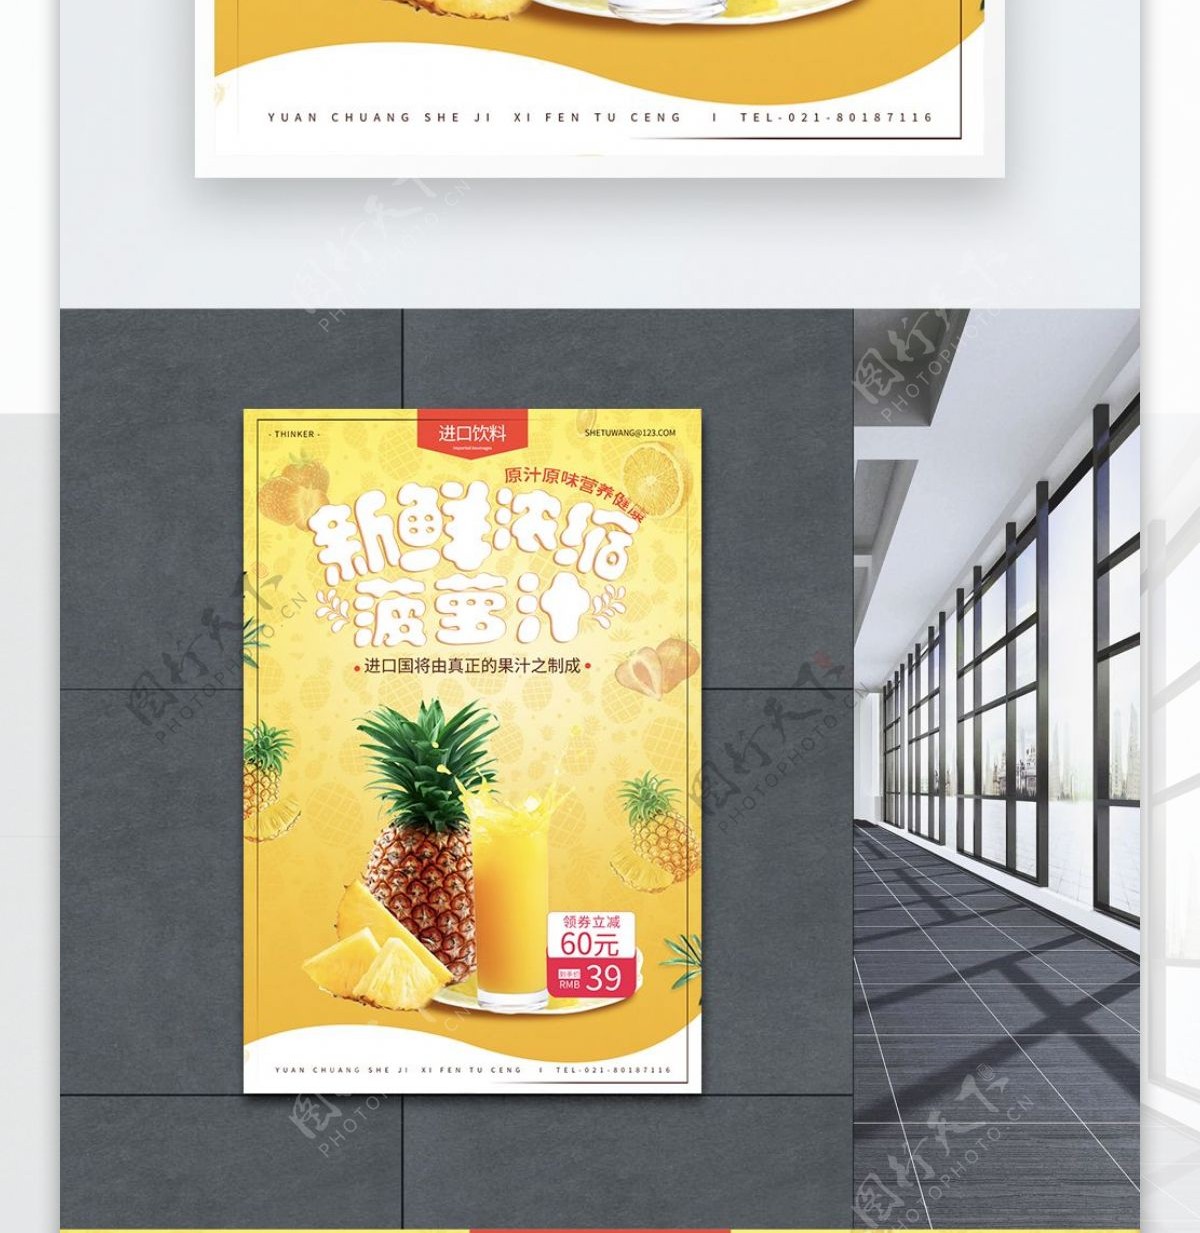 夏季果汁饮品海报